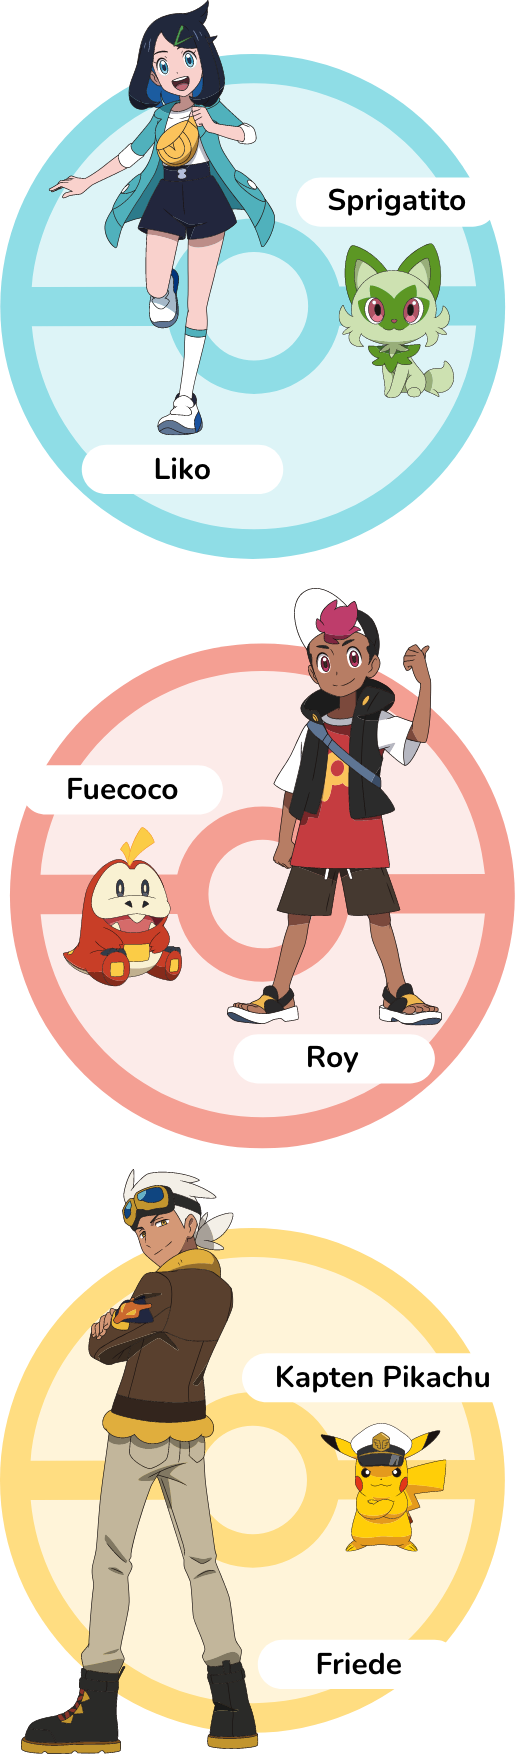 Liko/Sprigatito Roy/Fuecoco Friede/Kapten Pikachu